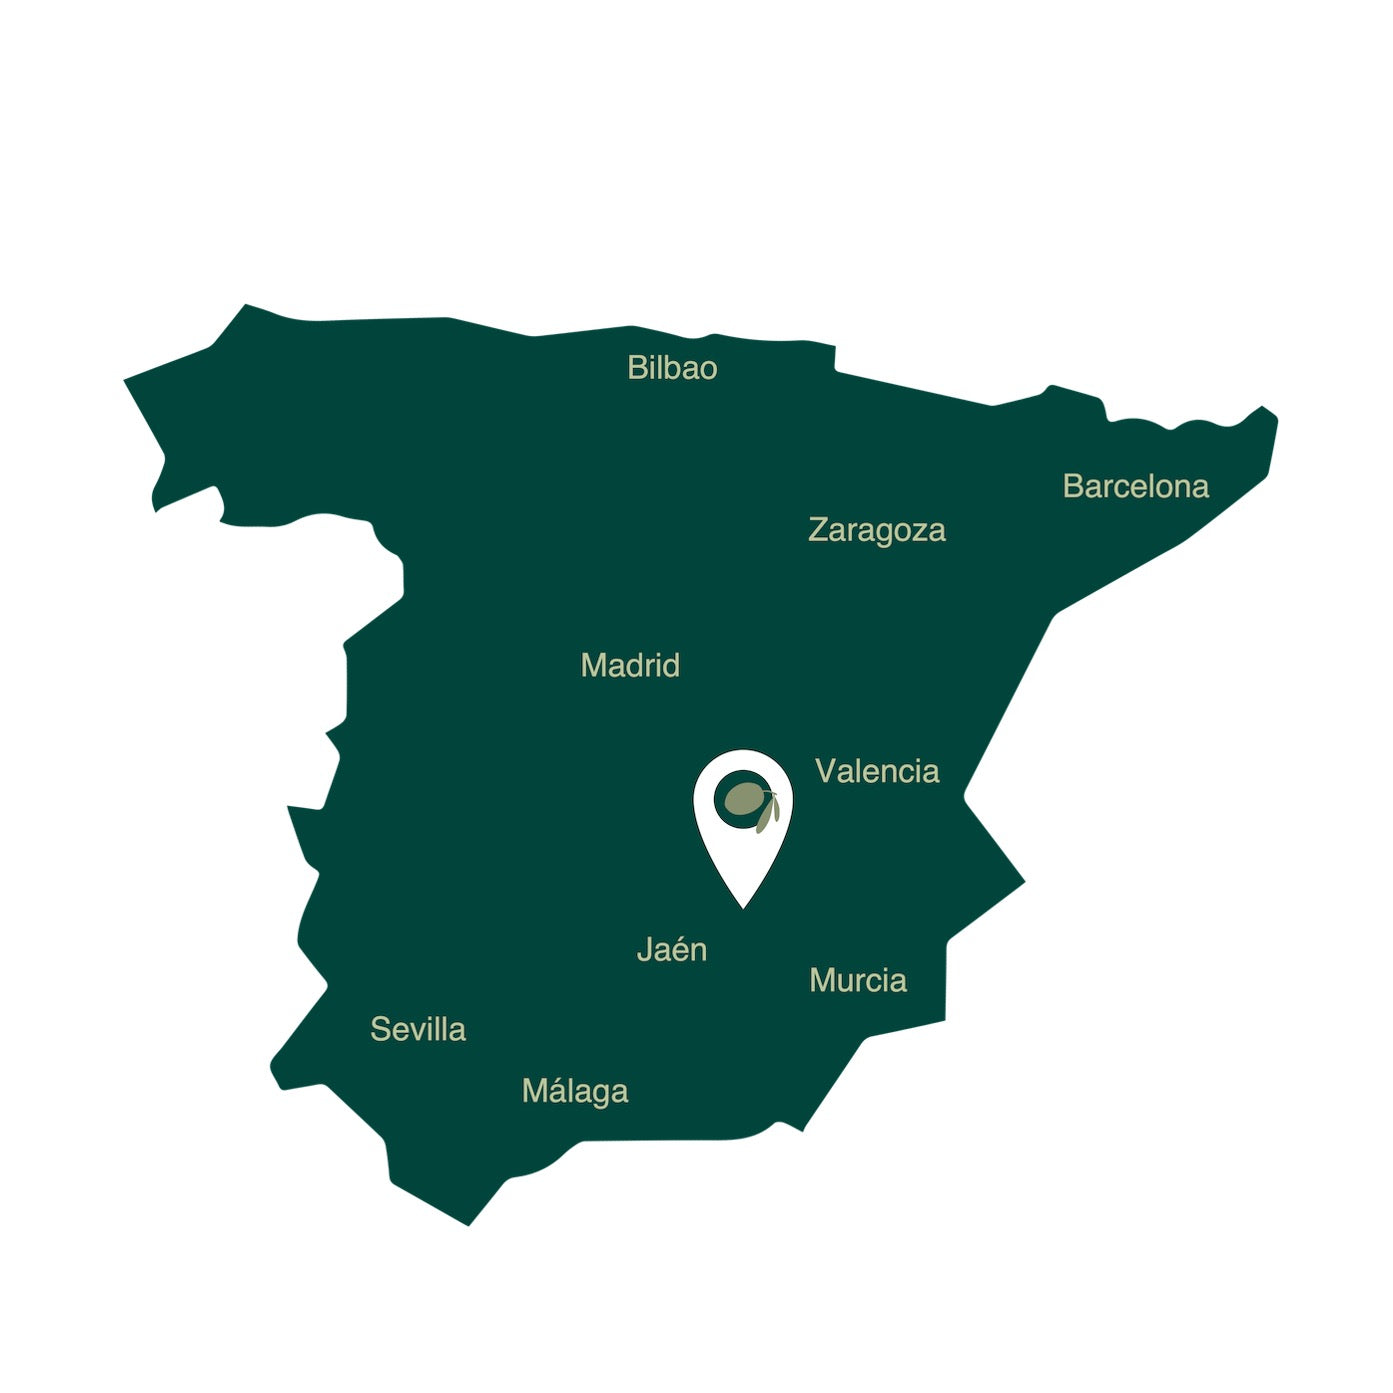 Landkaart van Spanje, met daarin Jaen in Andalusie en de Sierra de Segura waar de extra virgen (biologsche) olijfolie vandaan komt